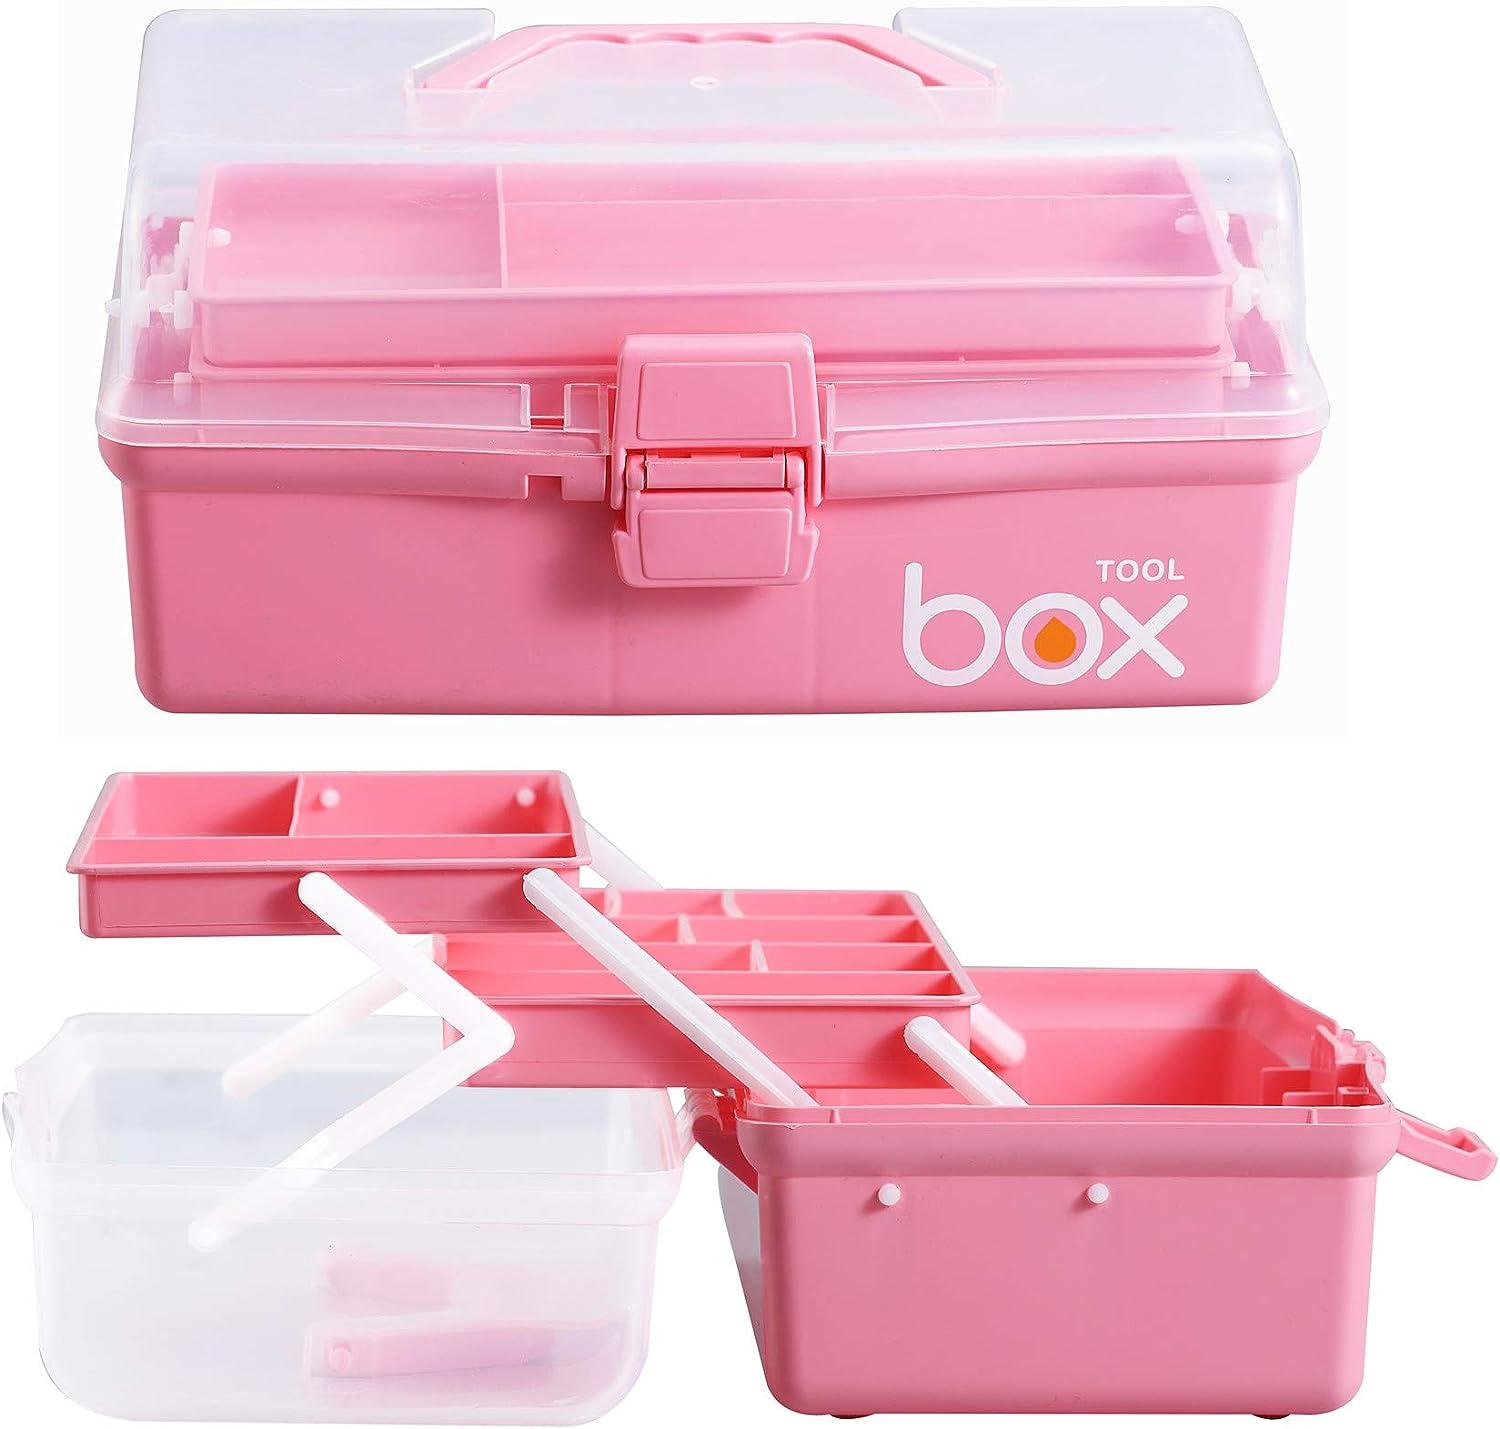 Kinsorcai 12'' Three-Layer Clear Plastic Storage Box/Tool Box